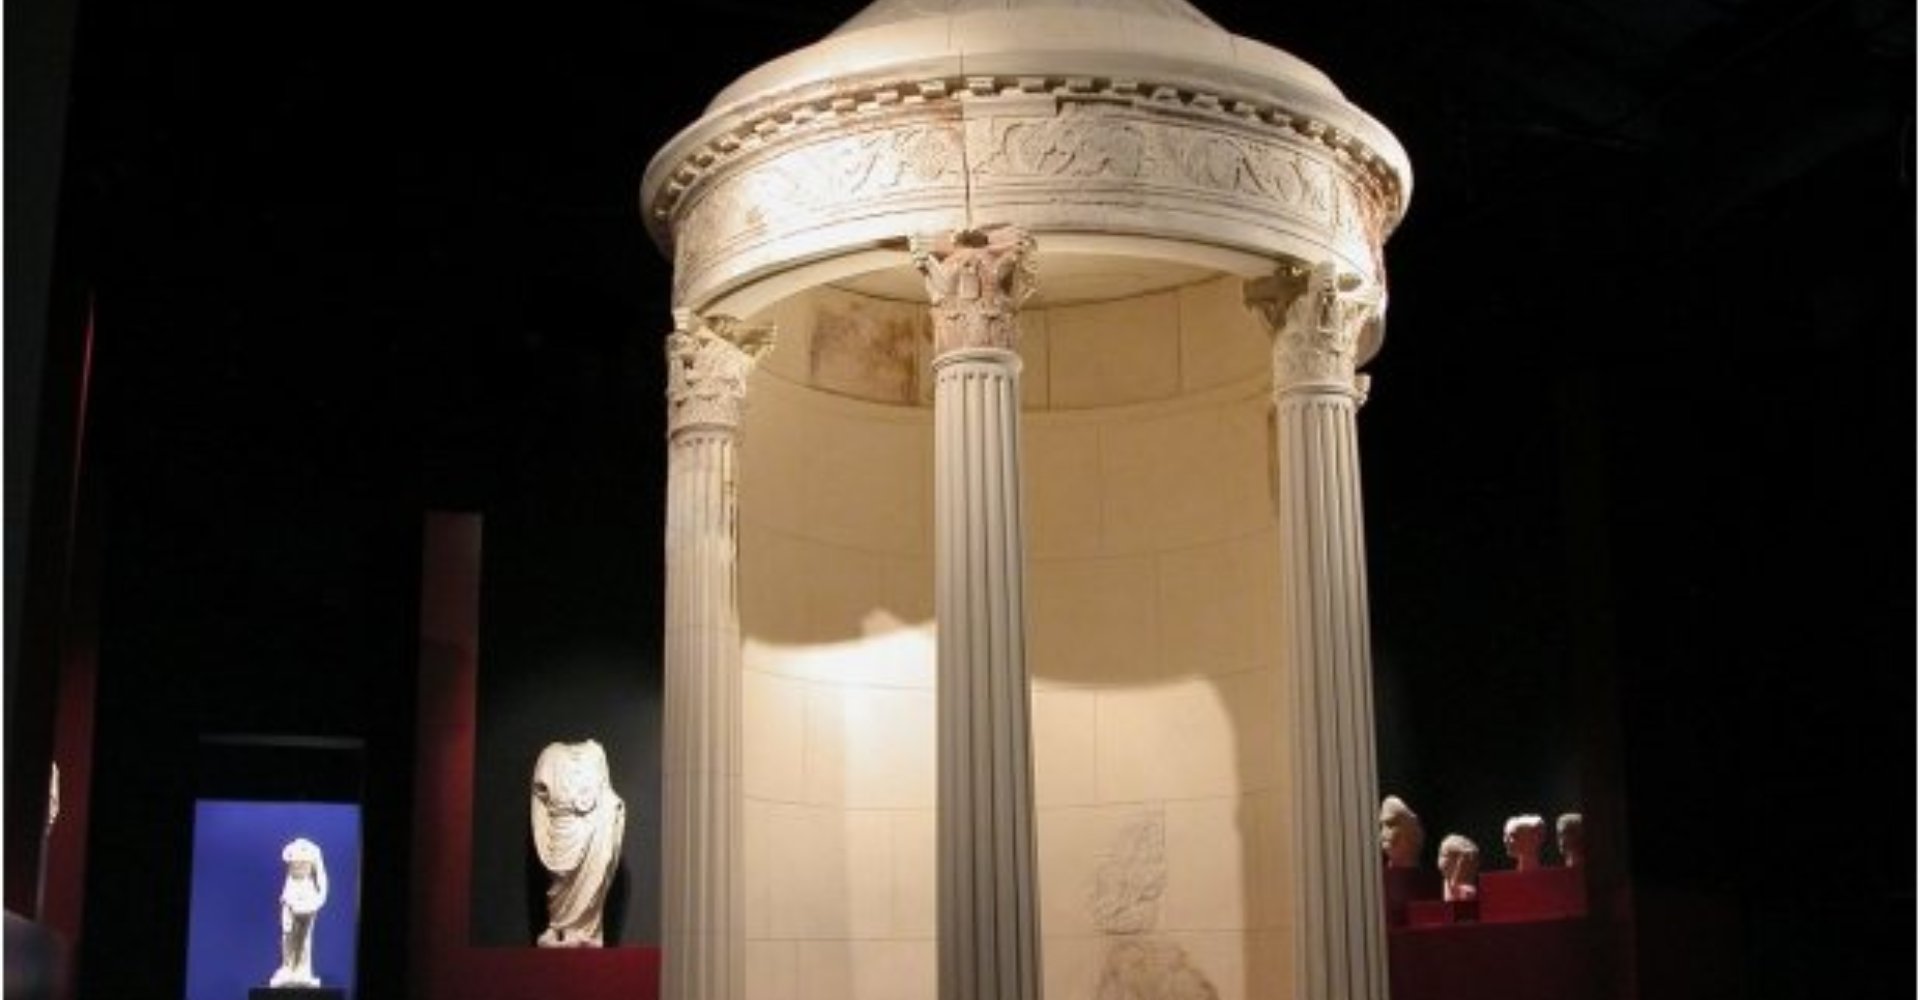 Das Antiquarium Nazionale (die staatliche Antikensammlung) von Sestino